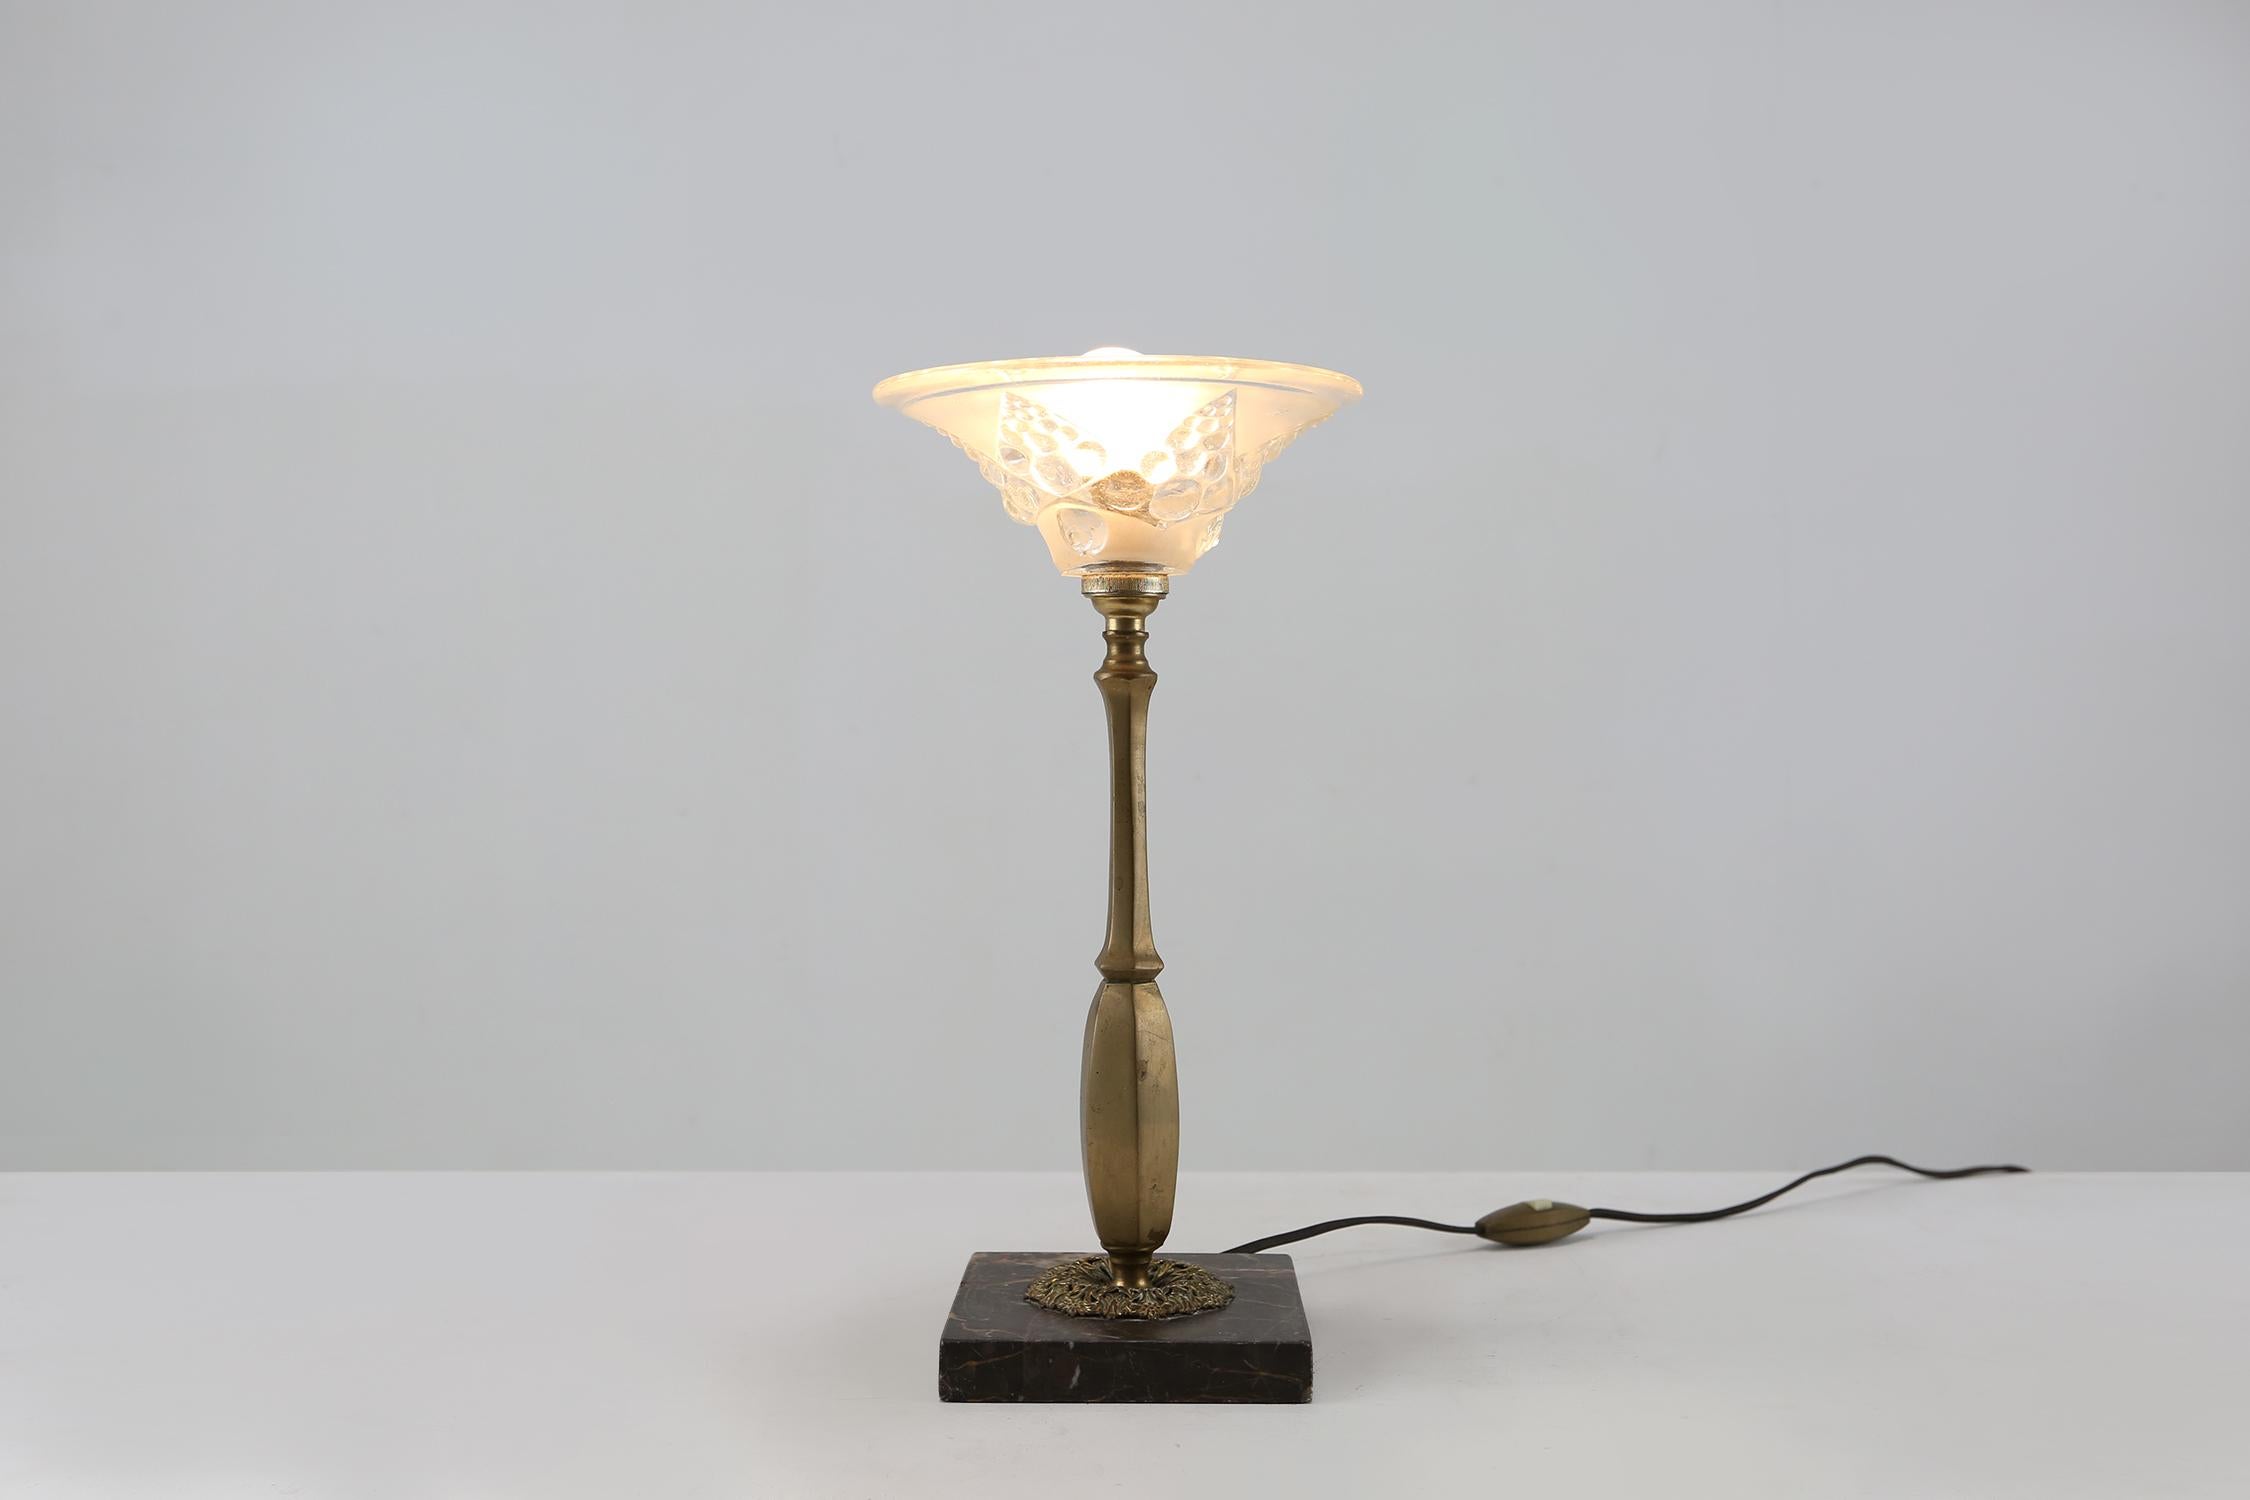 Lampe de table Art Nouveau française fabriquée vers 1920. Fabriquée en laiton, verre et marbre. Avec de jolis détails dans le verre et le laiton.